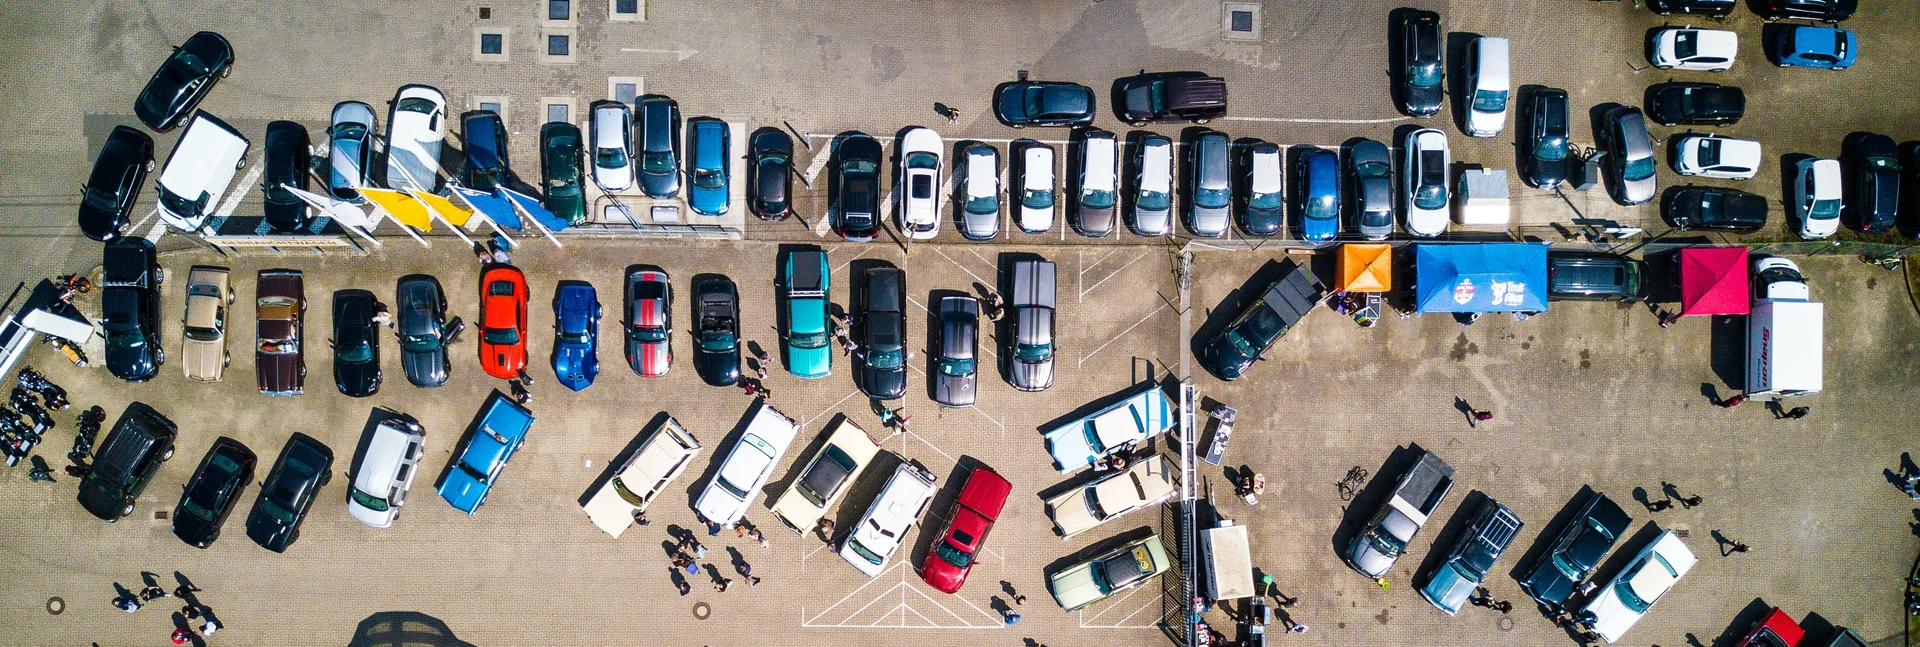 Pojazdy zastawiające parking